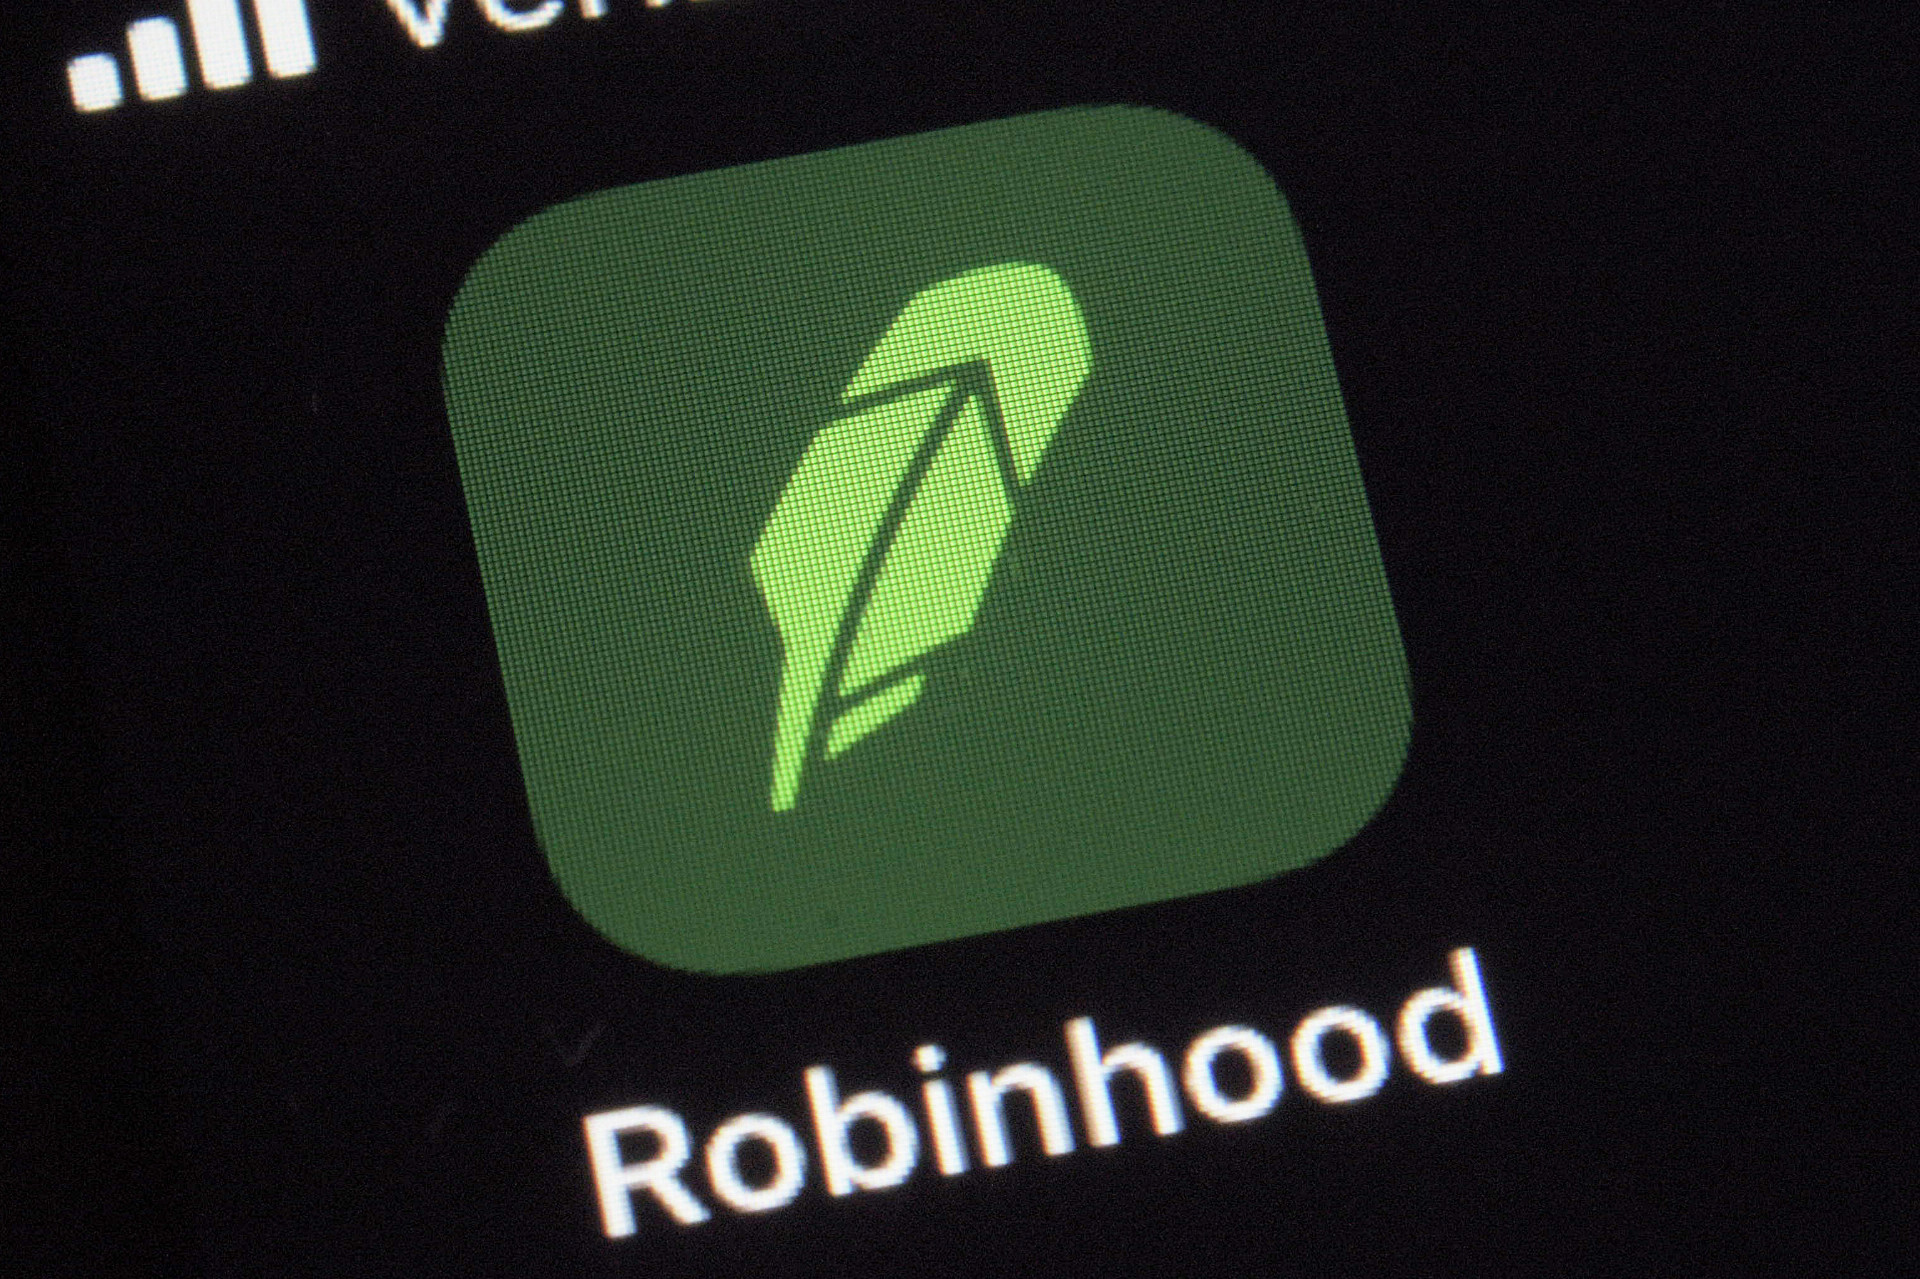 Robinhood poskytuje finančné služby a prevádzkuje populárnu aplikáciu, ktorá umožňuje bežným ľuďom obchodovanie s akciami, opciami, fondmi ETF či kryptomenami